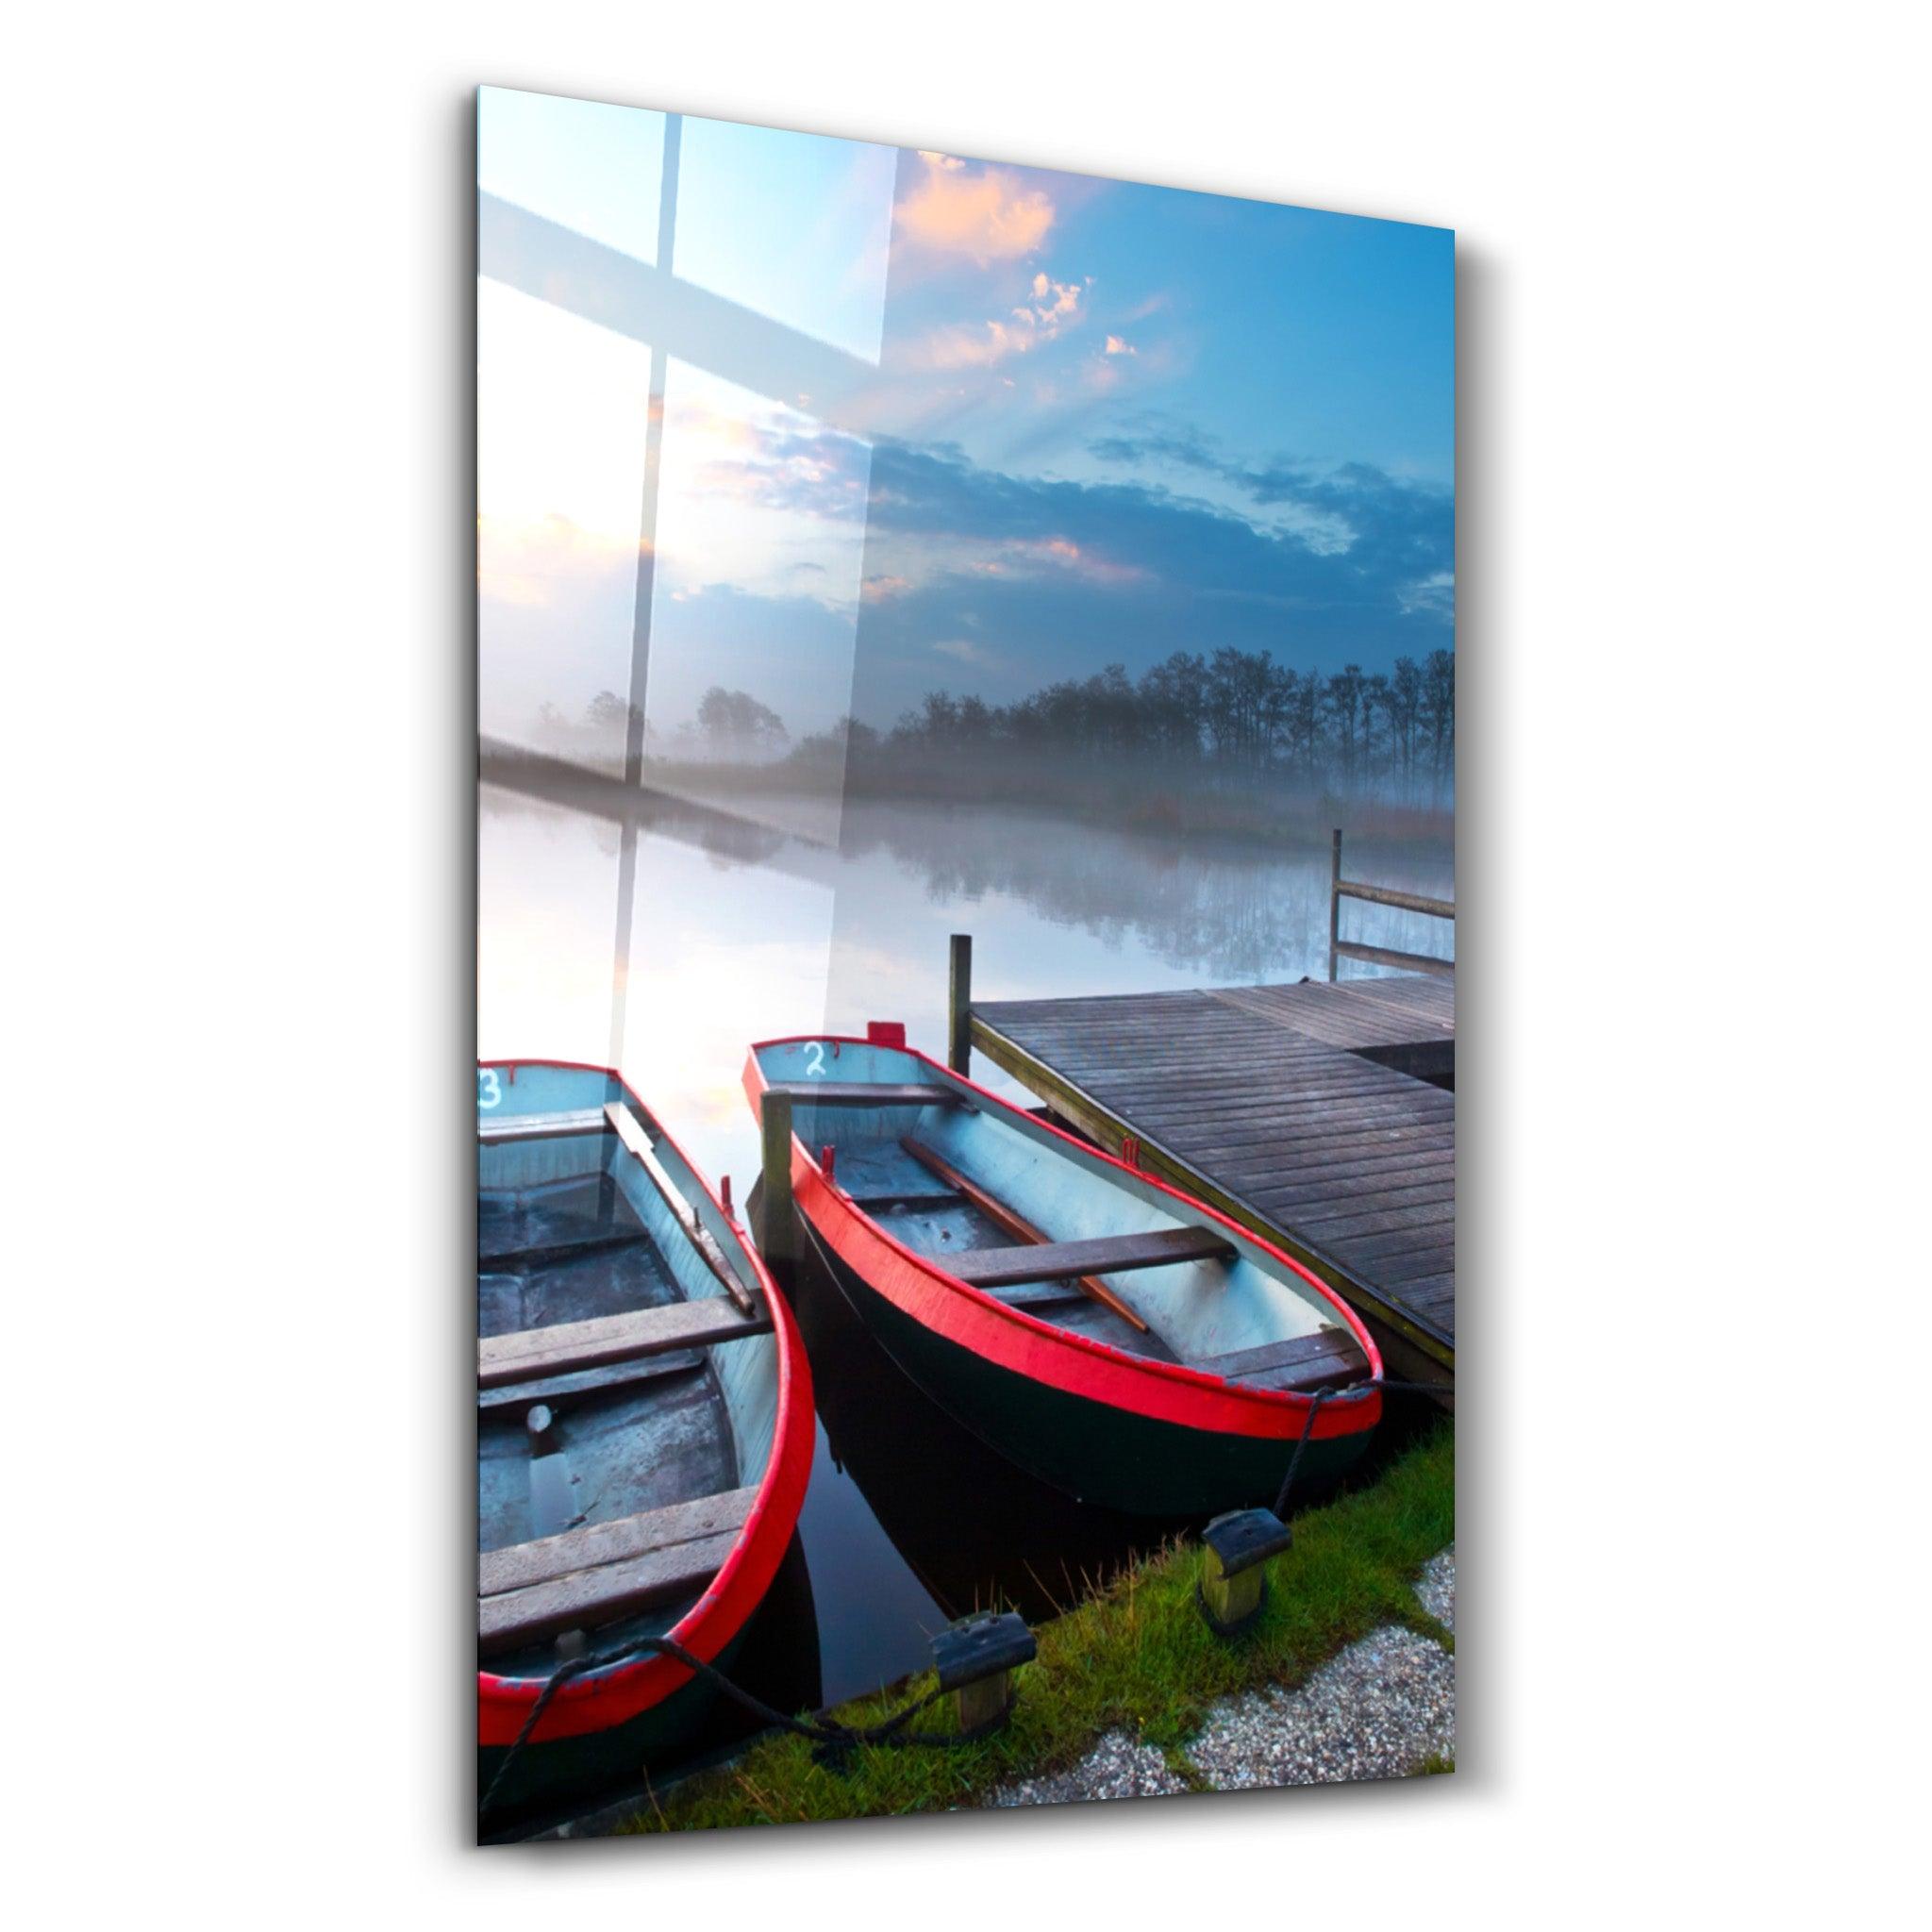 Lake and Boat Landscape | Glass Wall Art - ArtDesigna Glass Printing Wall Art